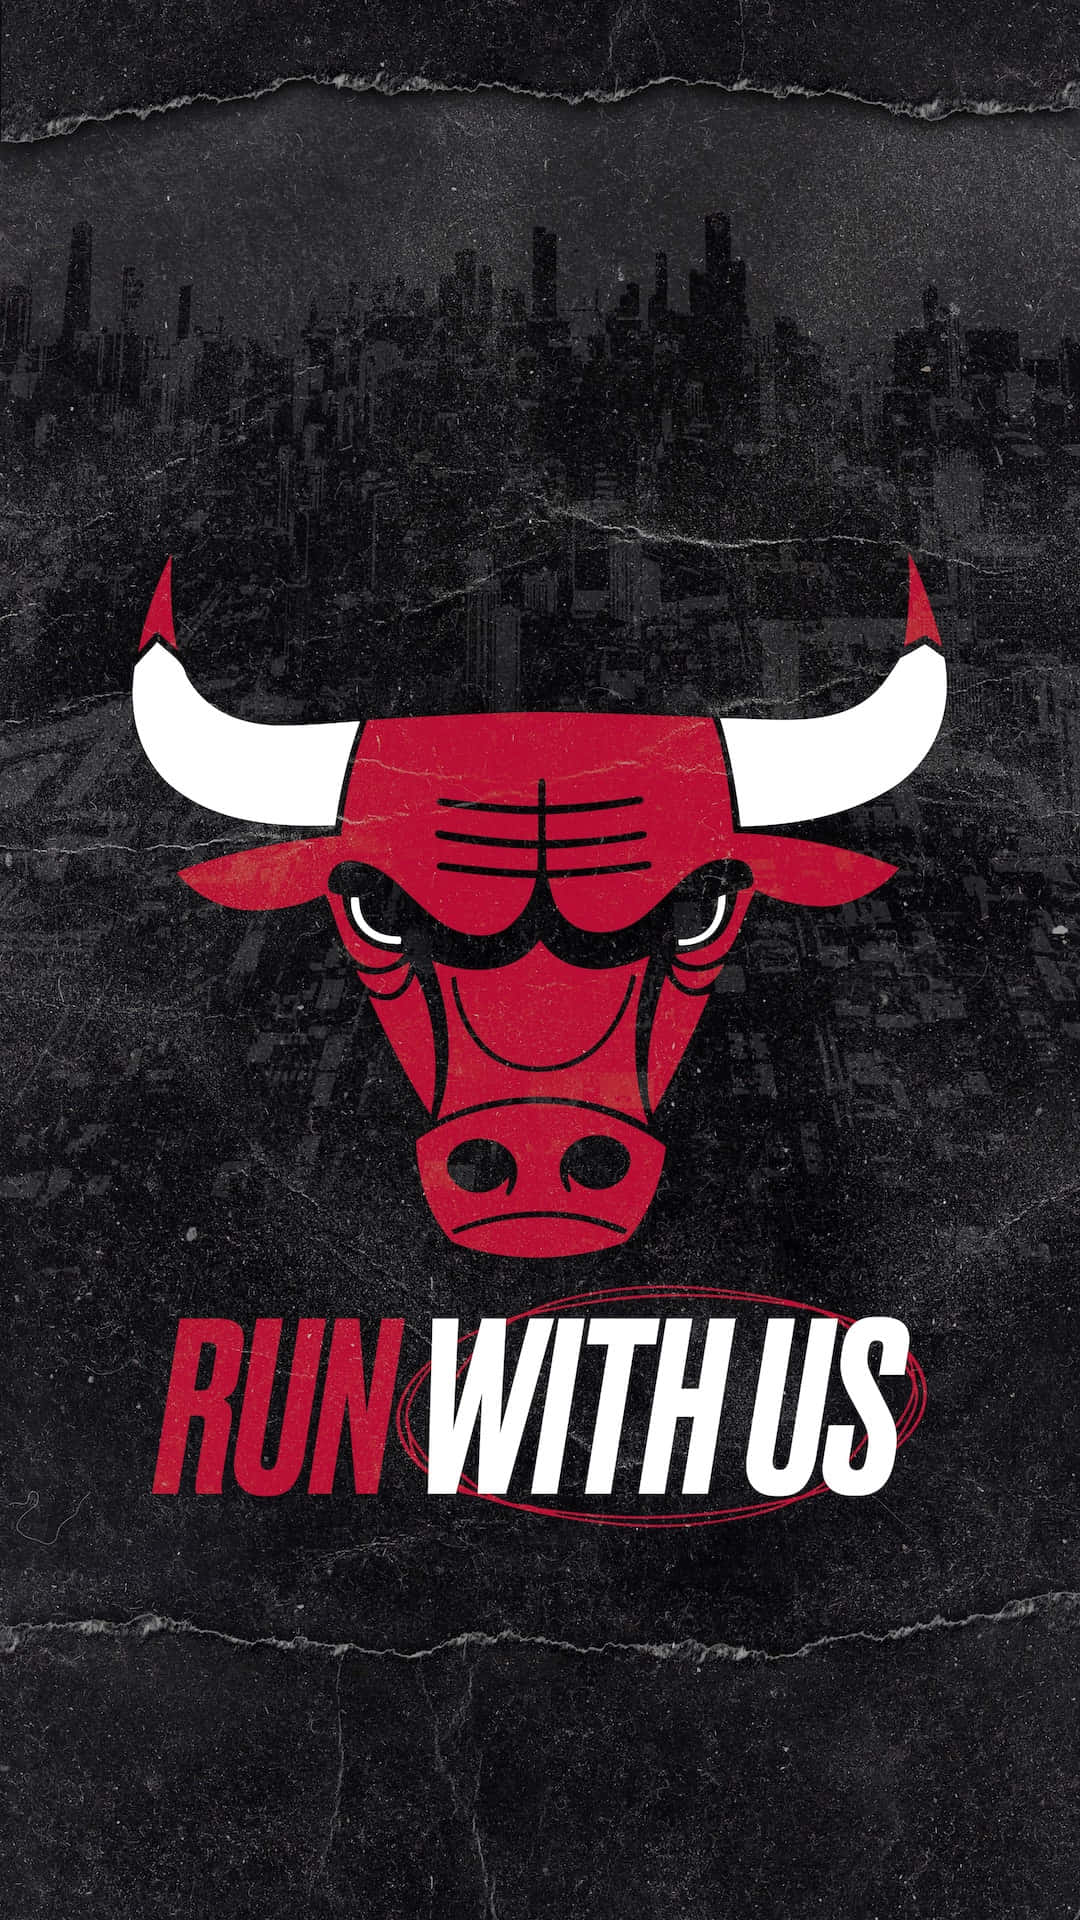 Vis din støtte til Chicago Bulls. Wallpaper